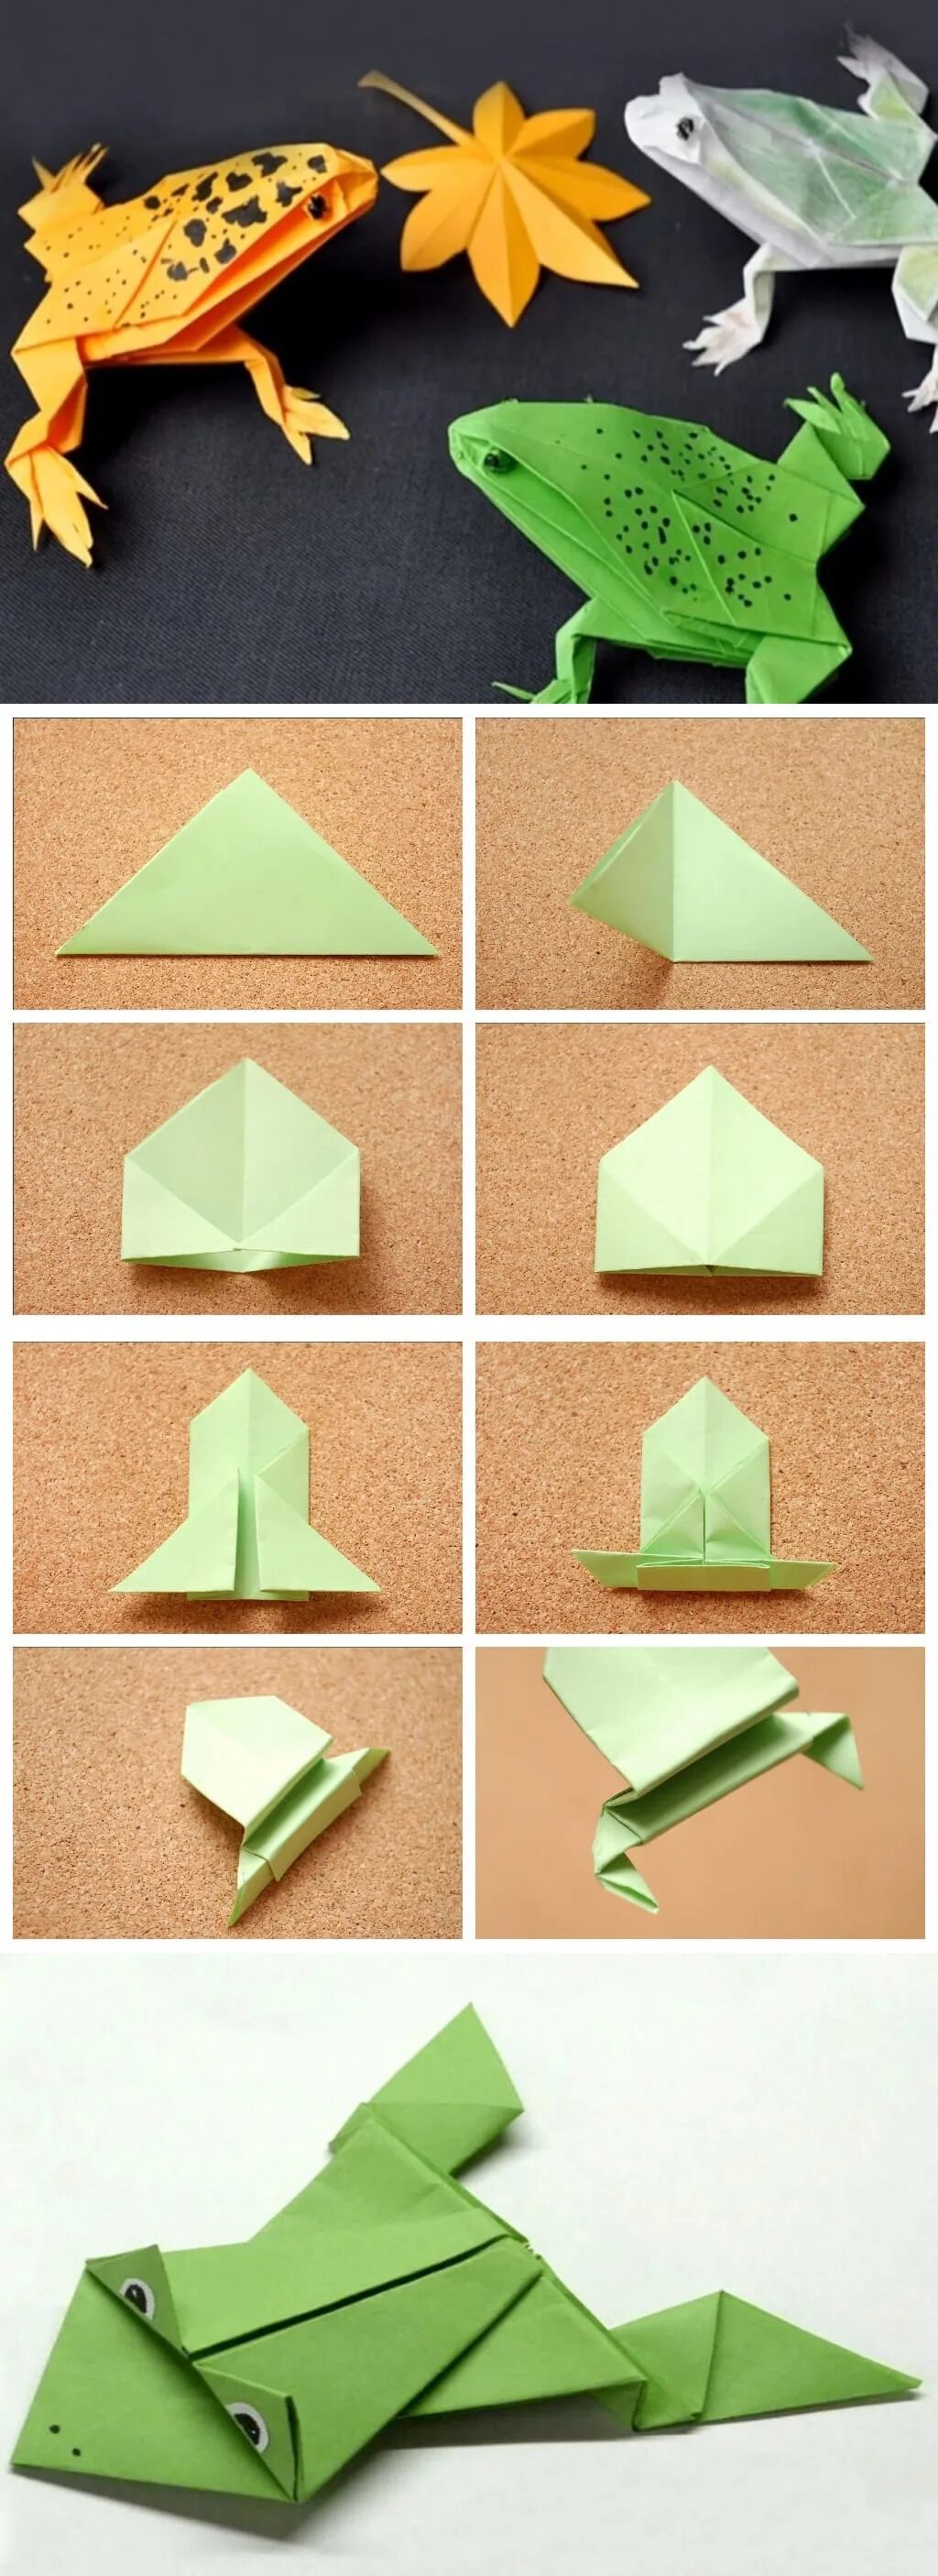 Как сделать лягушку из бумаги. Лягушка оригами из бумаги прыгающая. Оригами из бумаги для детей лягушка поэтапно. Лягушка попрыгушка оригами. Лягушка оригами простая для детей.